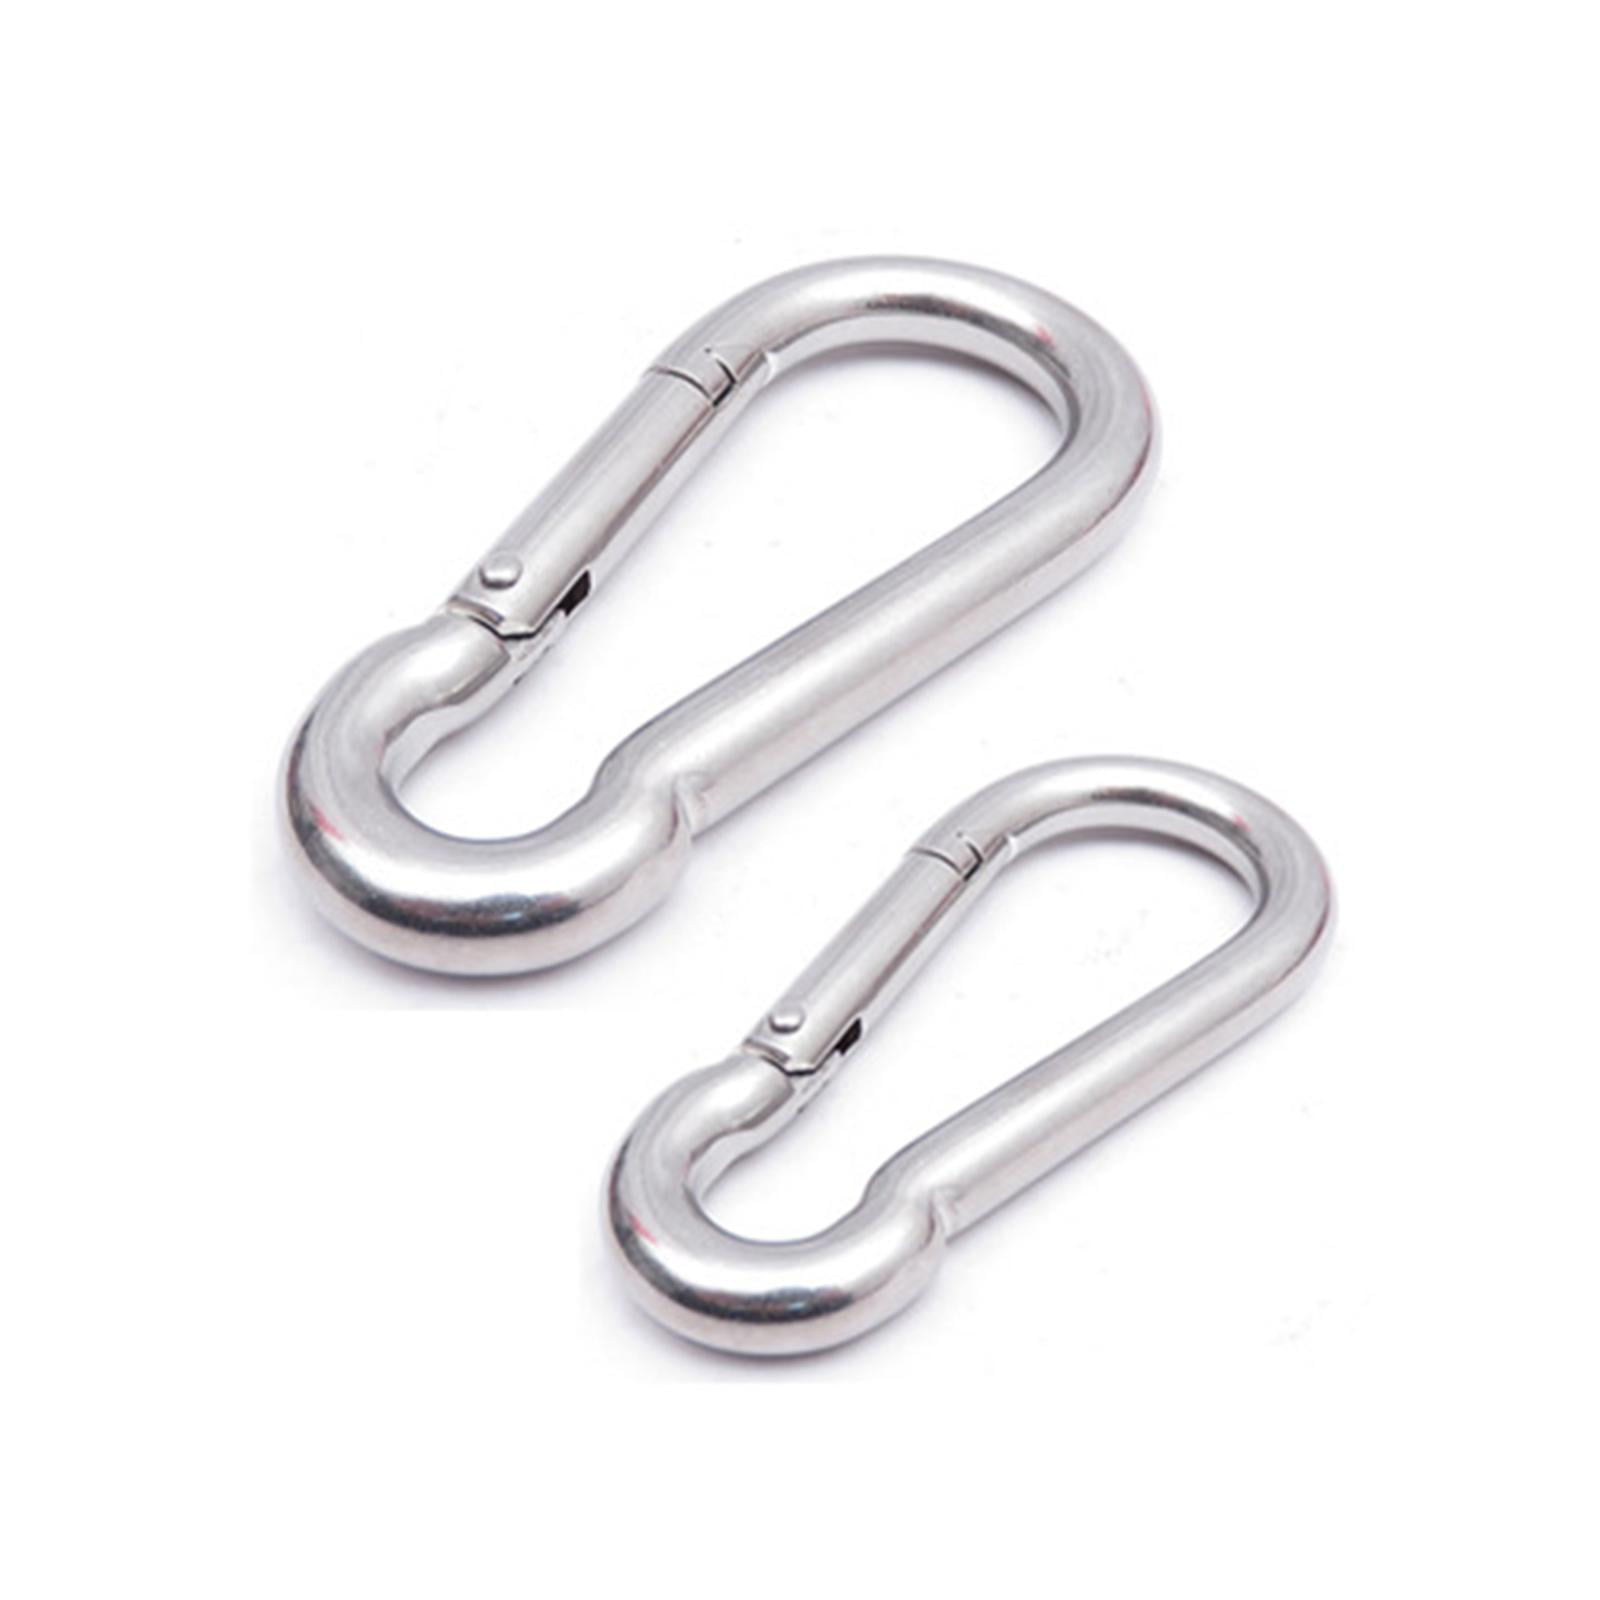 316 Stainless Steel Spring Carabiner Snap Hook Keychain Quick Link Lock Buckle U 